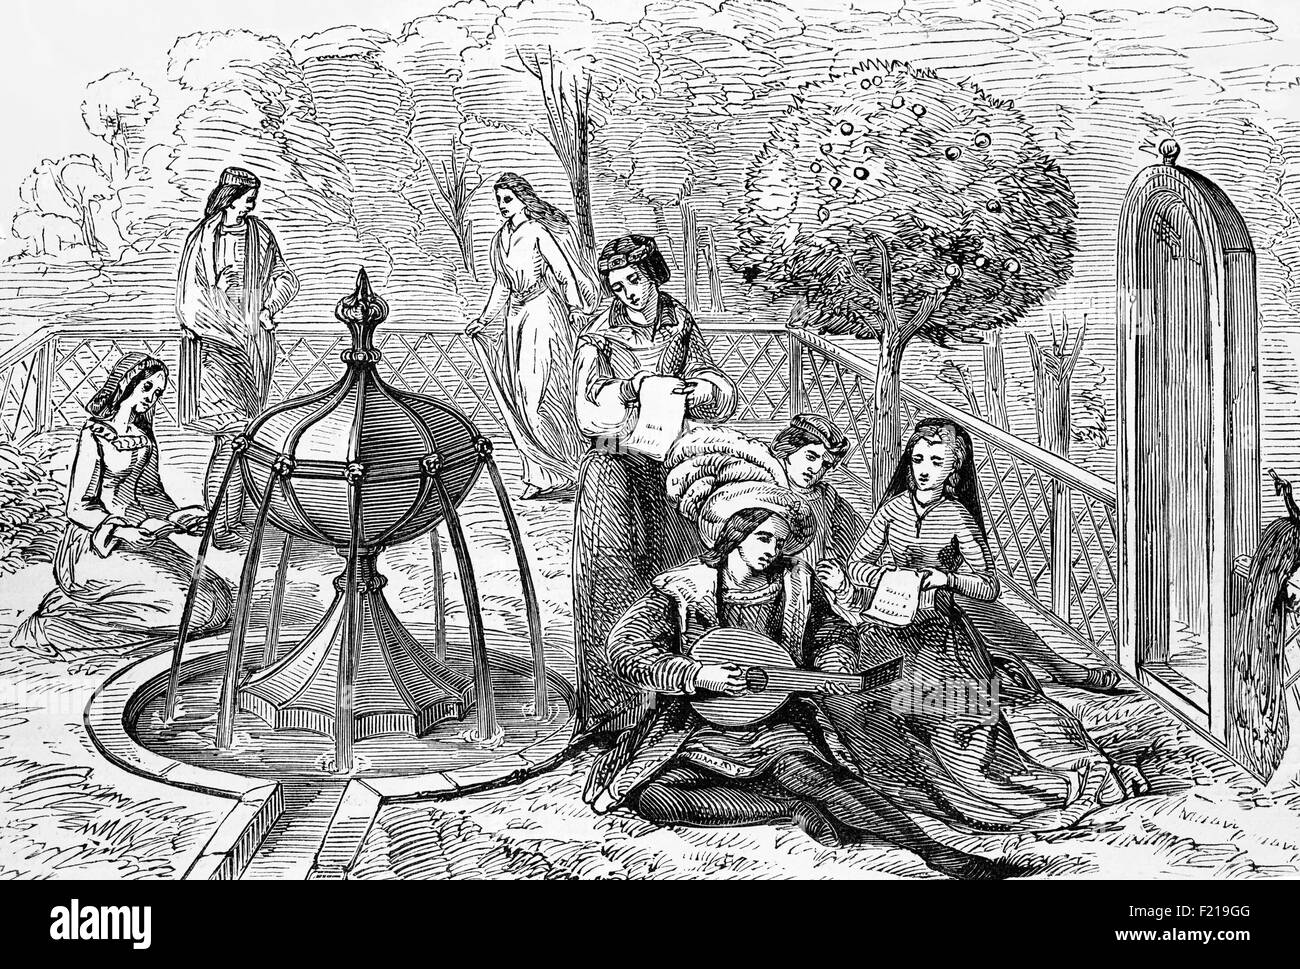 L'aristocratie anglaise du XVe siècle s'amusent dans un jardin typique avec du chant et de la musique fournis par un joueur de luth. Banque D'Images